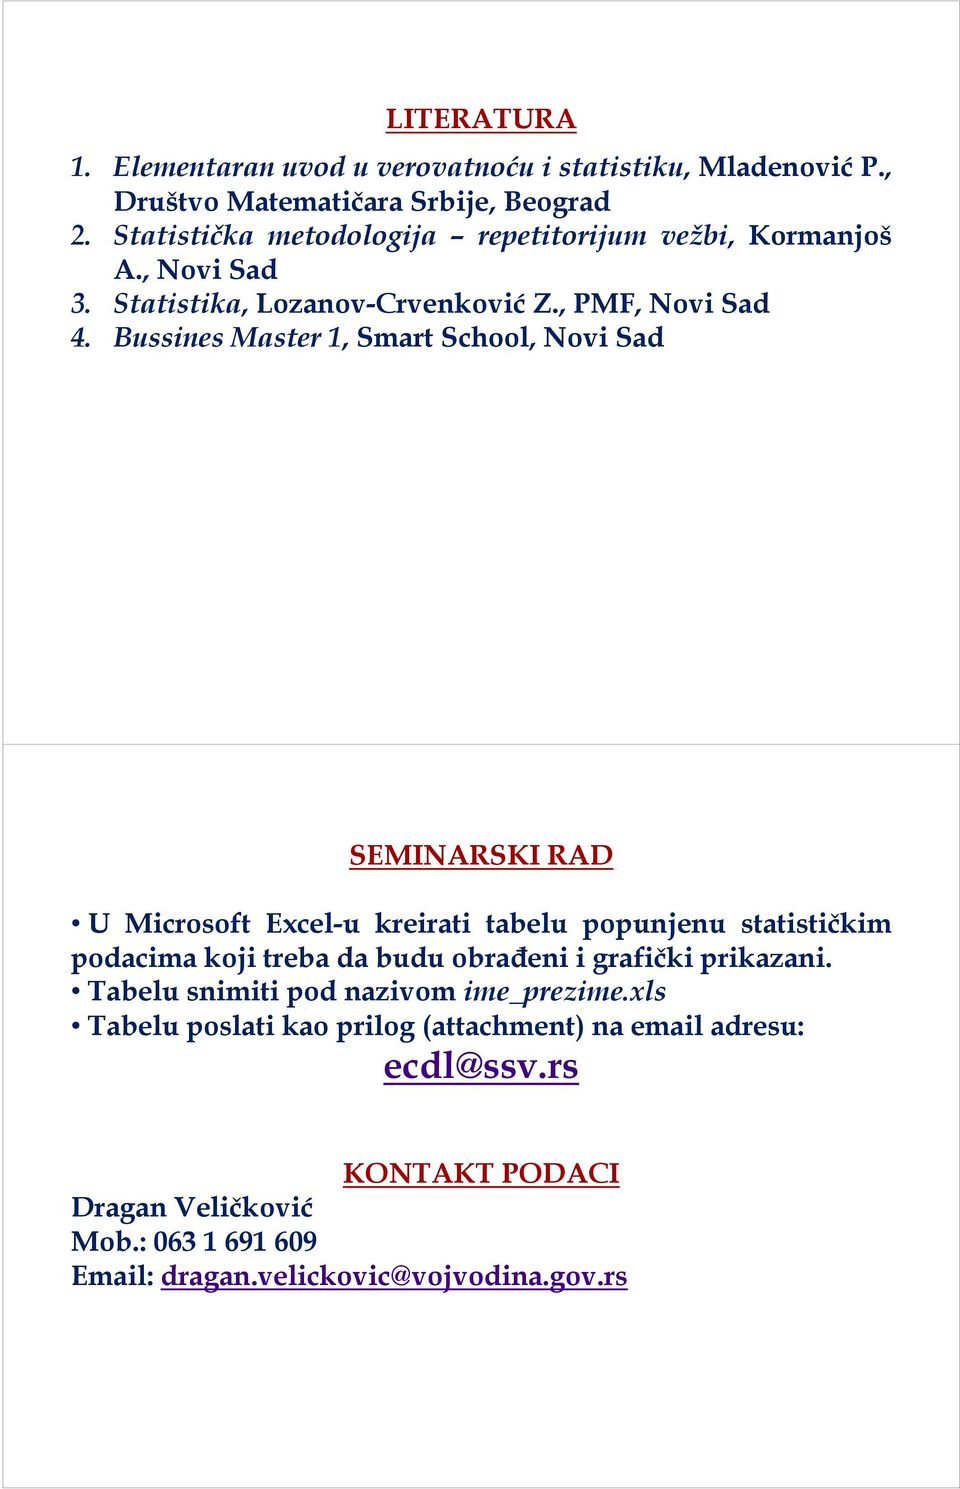 Bussines Master 1, Smart School, Novi Sad SEMINARSKI RAD U Microsoft Excel-u kreirati tabelu popunjenu statističkim podacima koji treba da budu obrađeni i